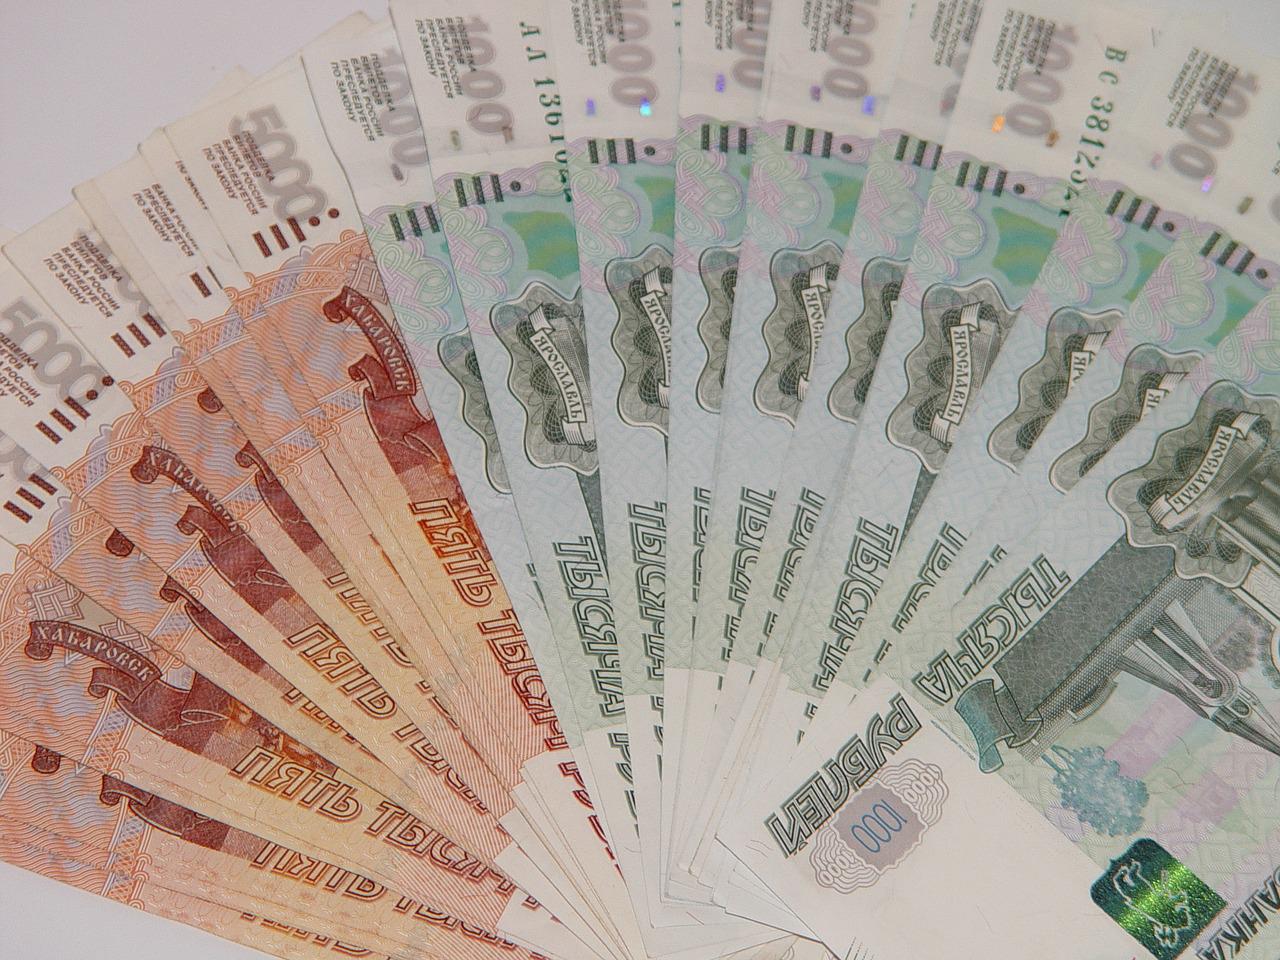 Многодетные семьи Пензы получили материальную поддержку на 690 тысяч рублей